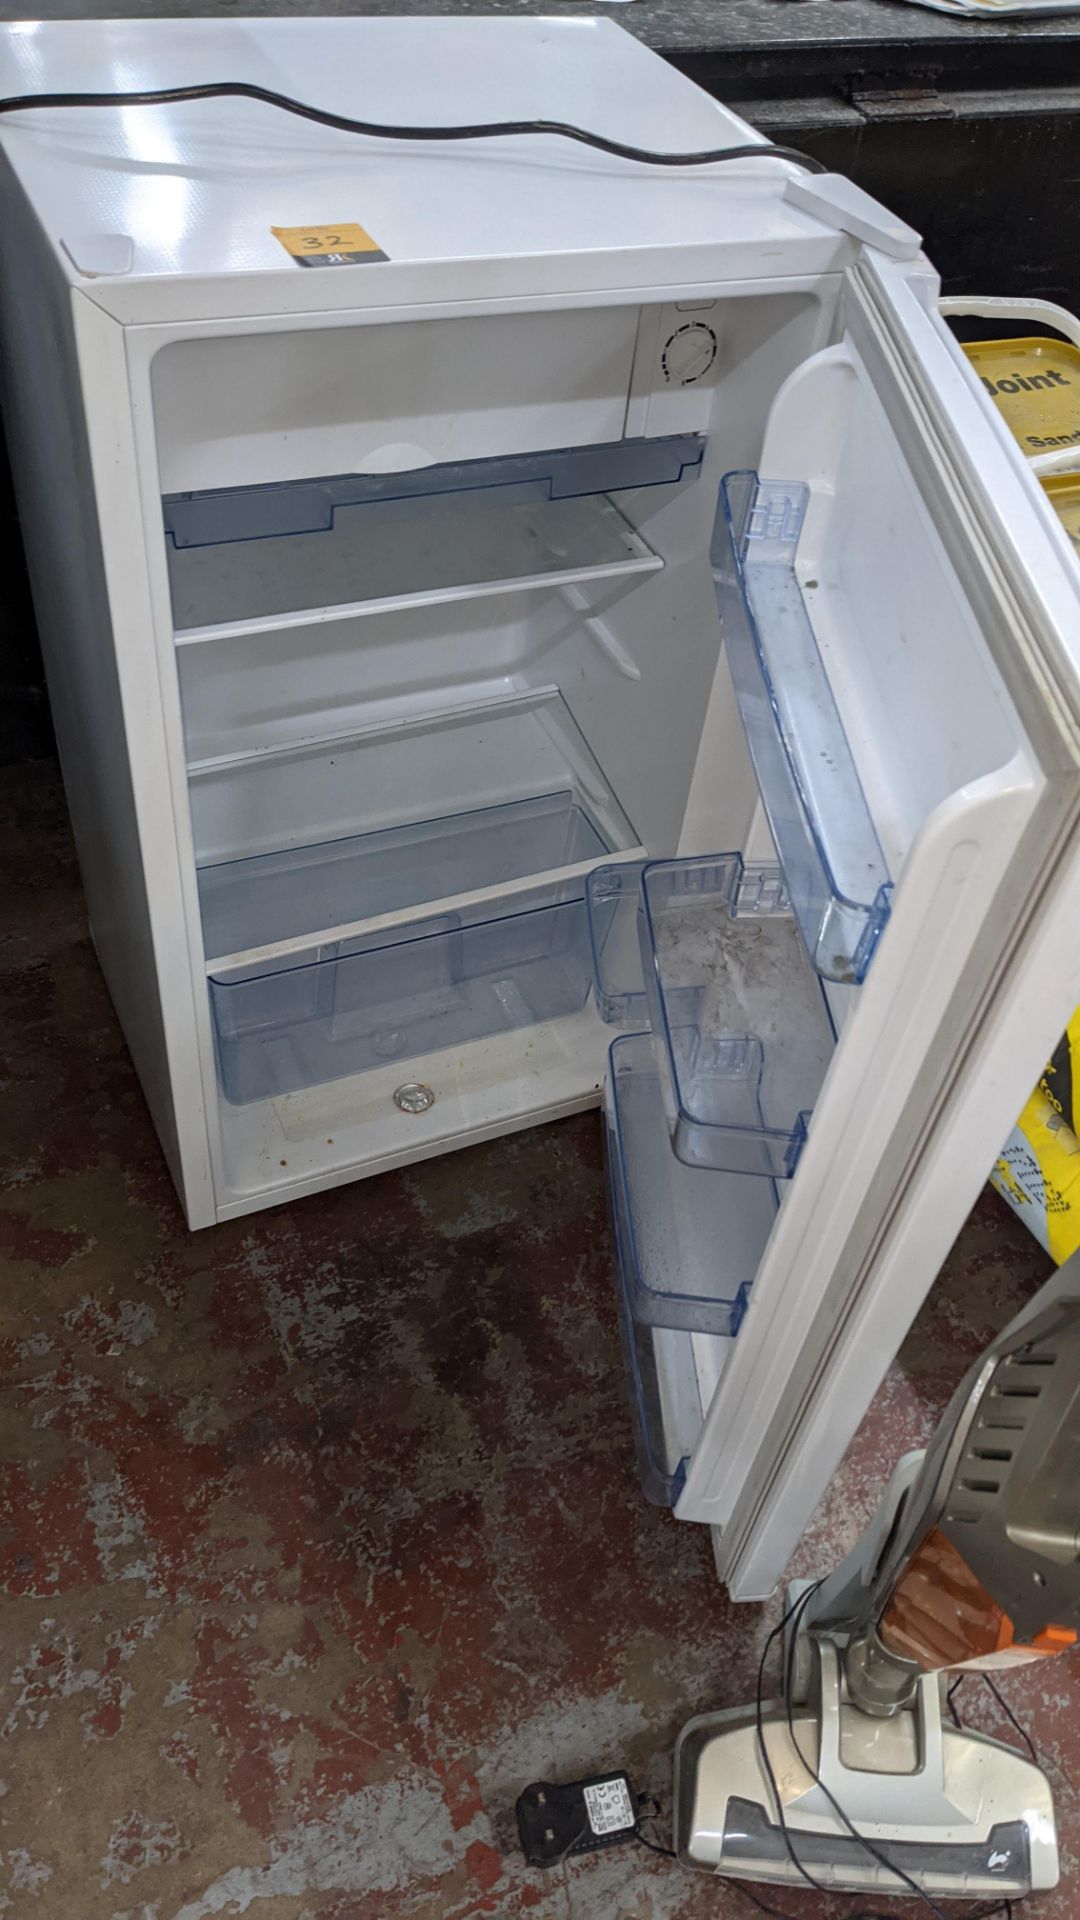 Fridgemaster undercounter fridge with ice box - Image 3 of 4